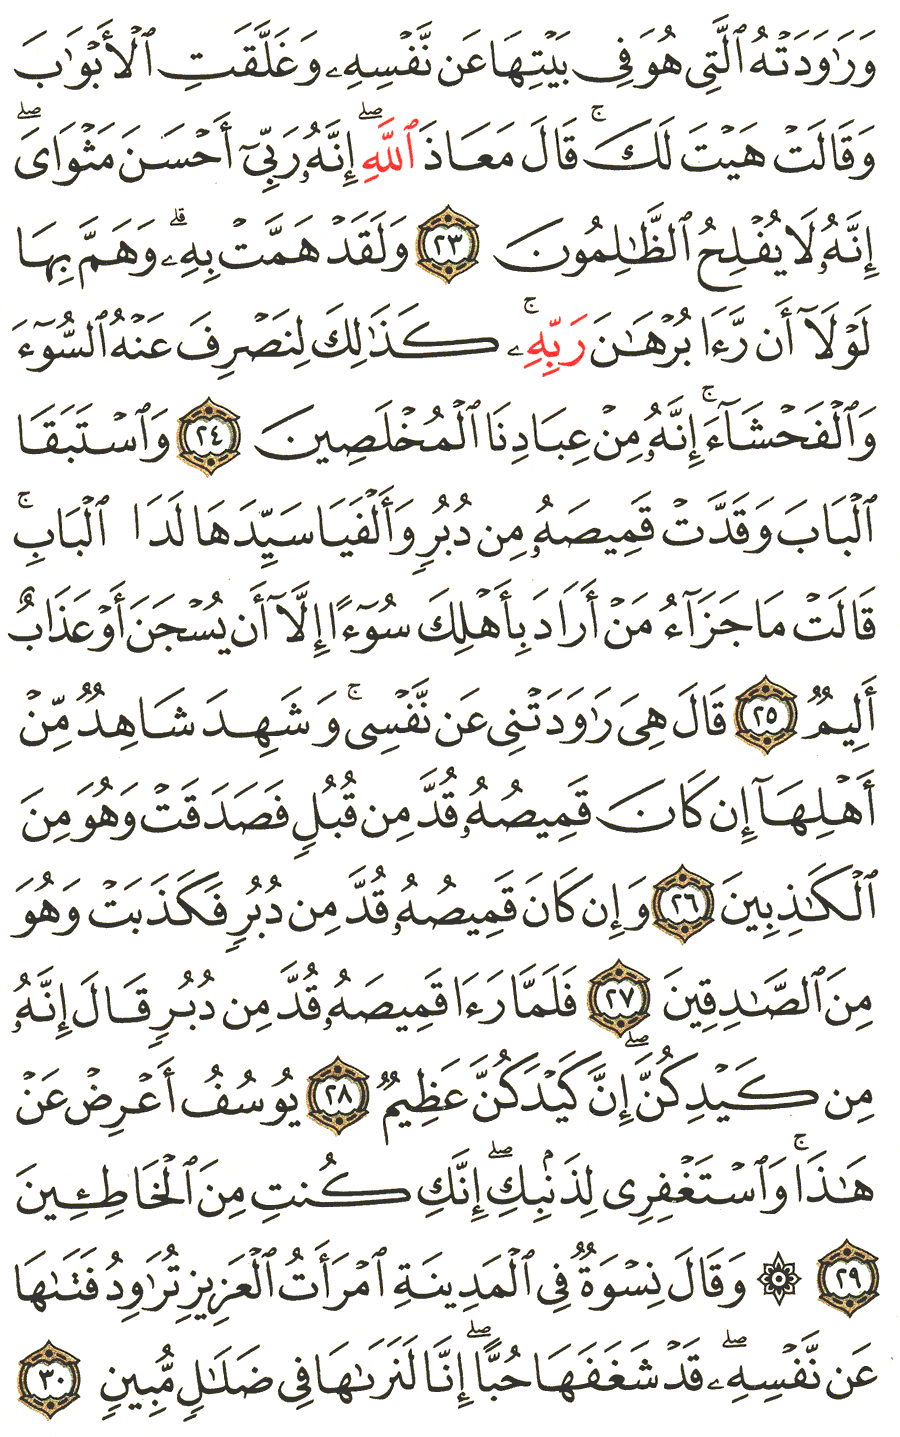 الصفحة رقم 238  من القرآن الكريم مكتوبة من المصحف